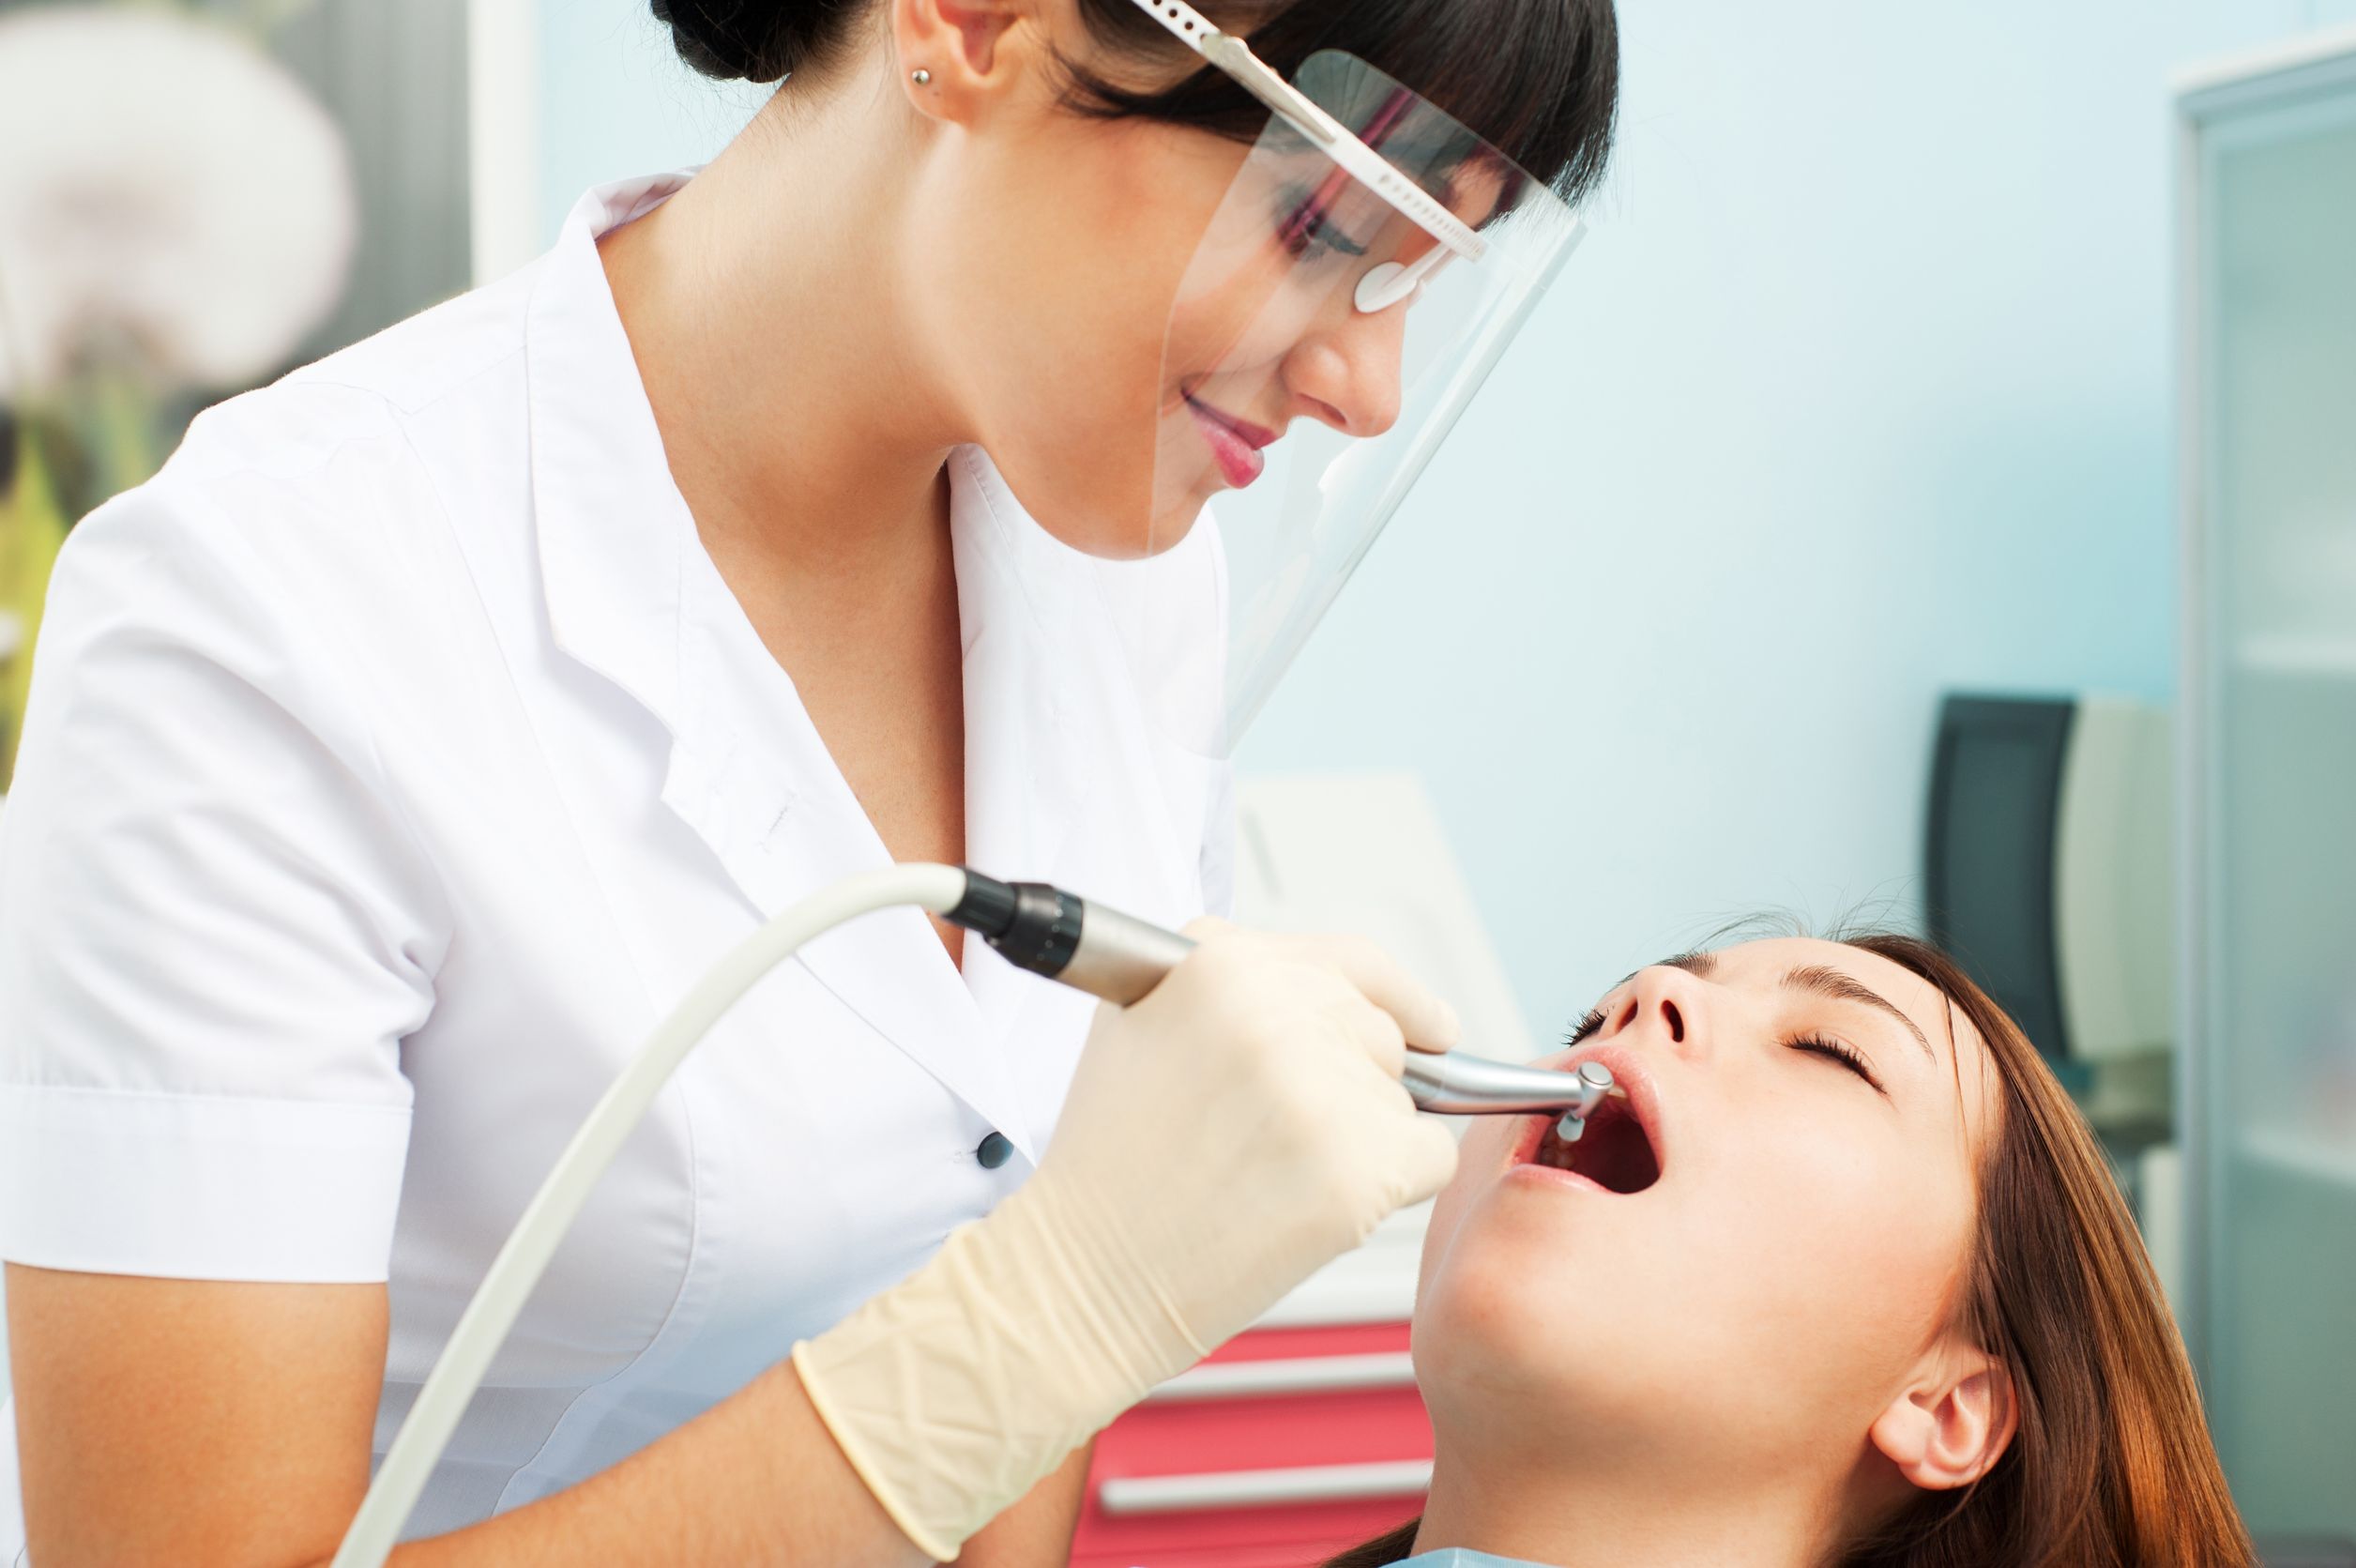 Если вы находитесь в поисках хорошего дантиста, то мы предлагаем посетить нашу стоматологию в Киеве